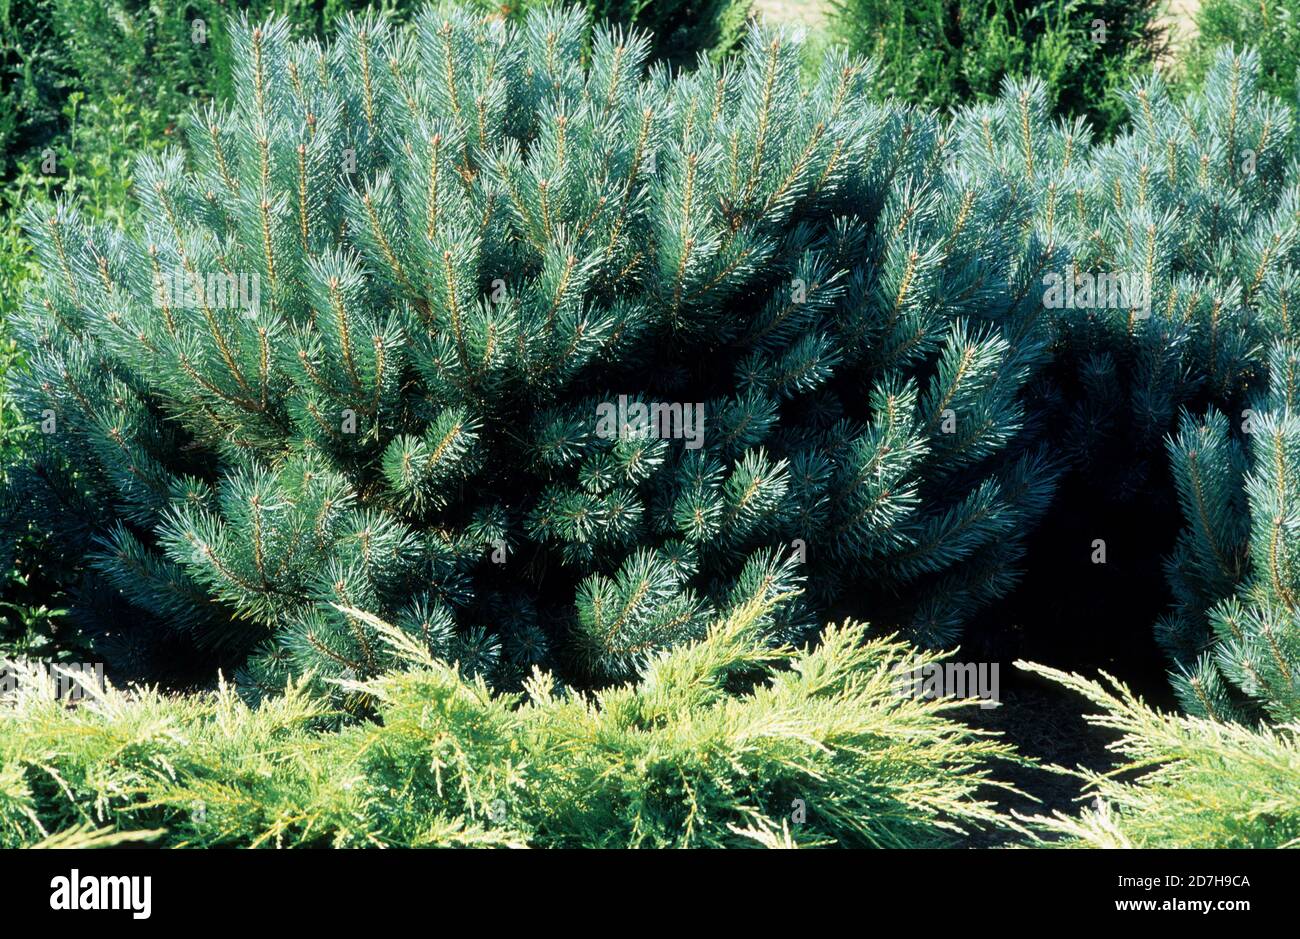 Scotch pine (Pinus sylvestris) 'Watereri', synonym (Pinus sylvestris) 'Nana'. Stock Photo